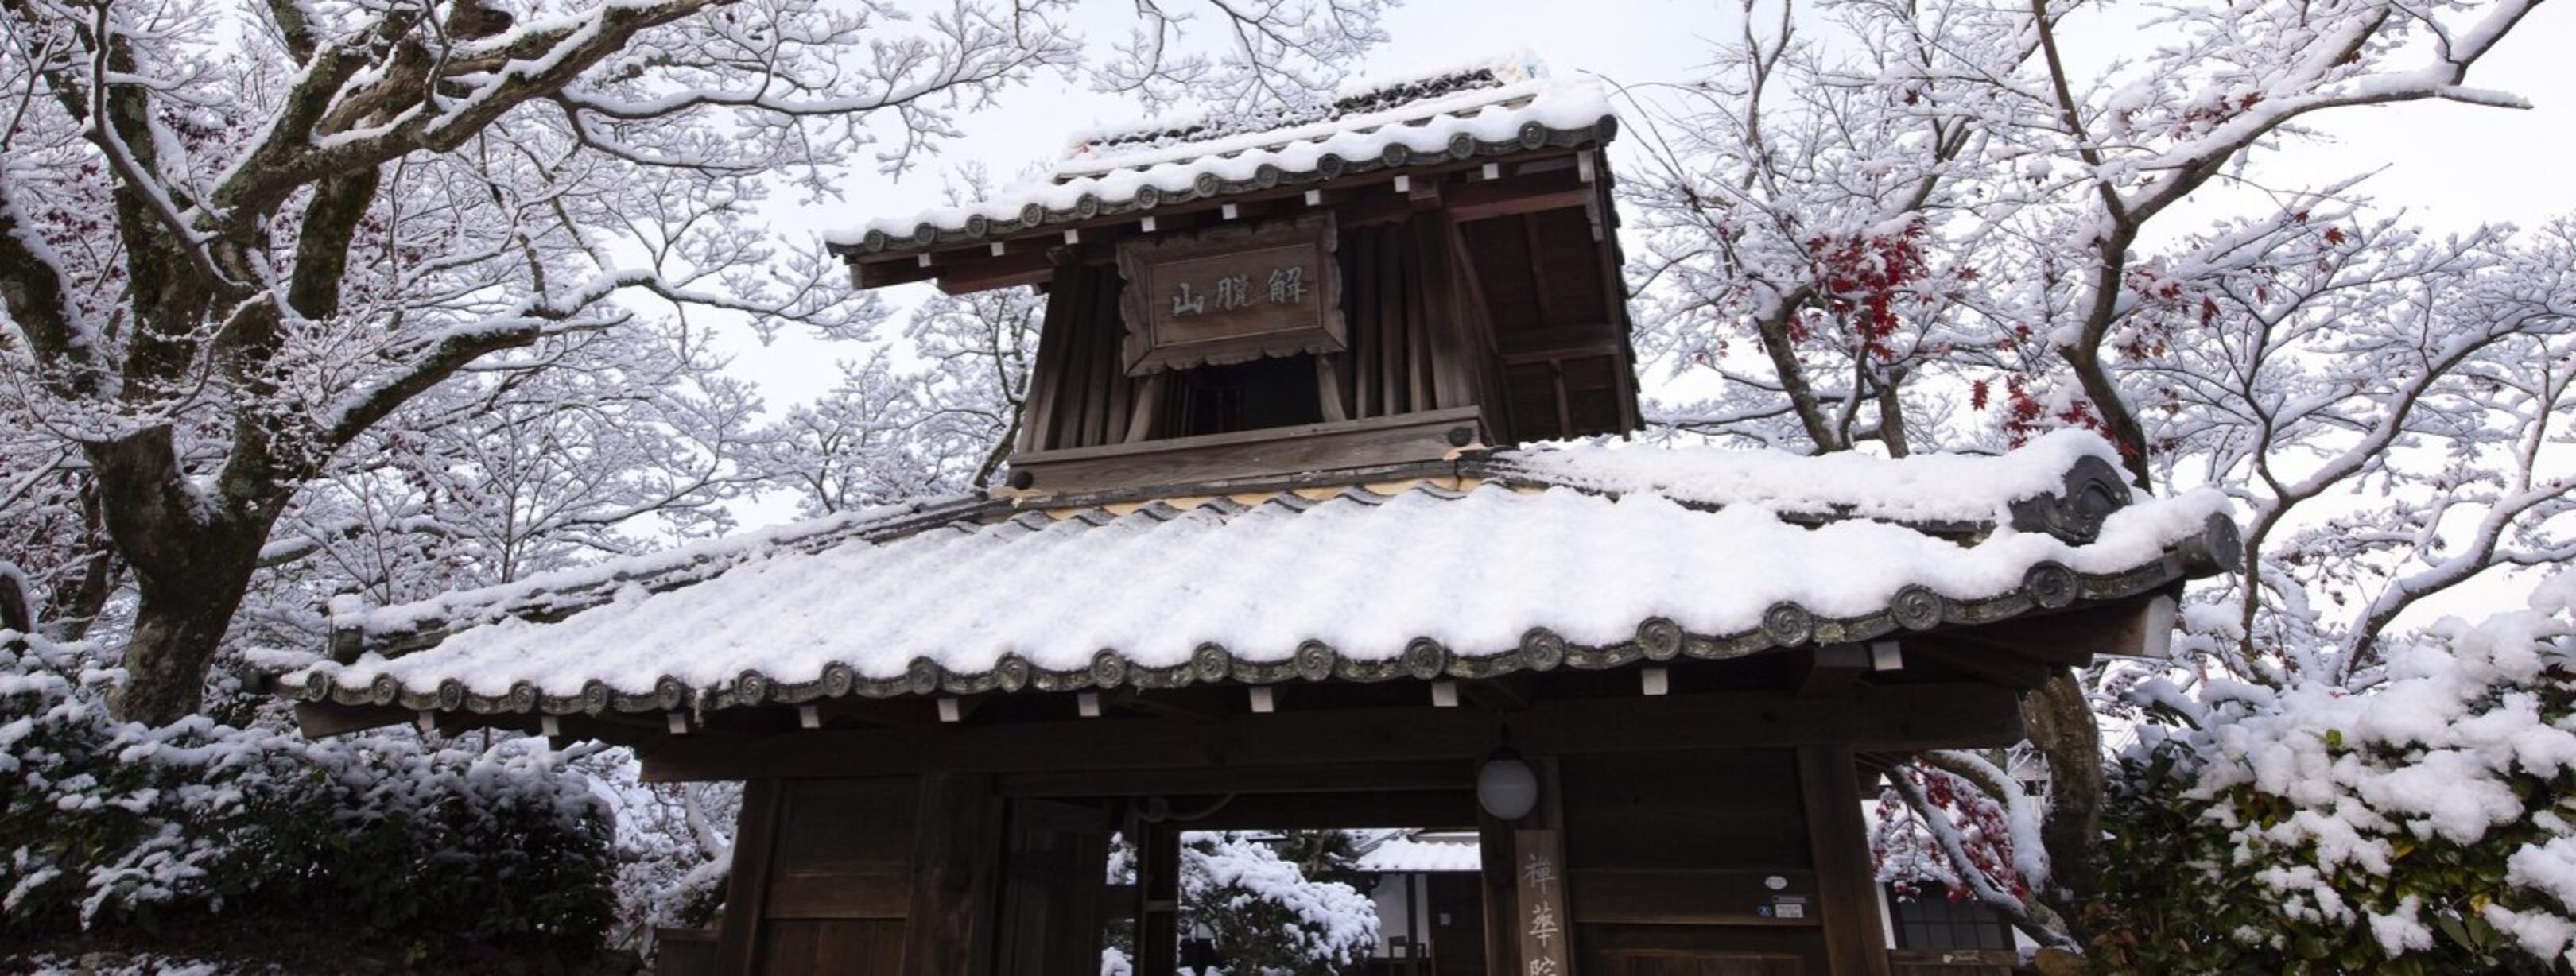 beste-boeddhistische-media-2022-Patrick Vierthaler_Temple Gate, Snow and Maple Foliage